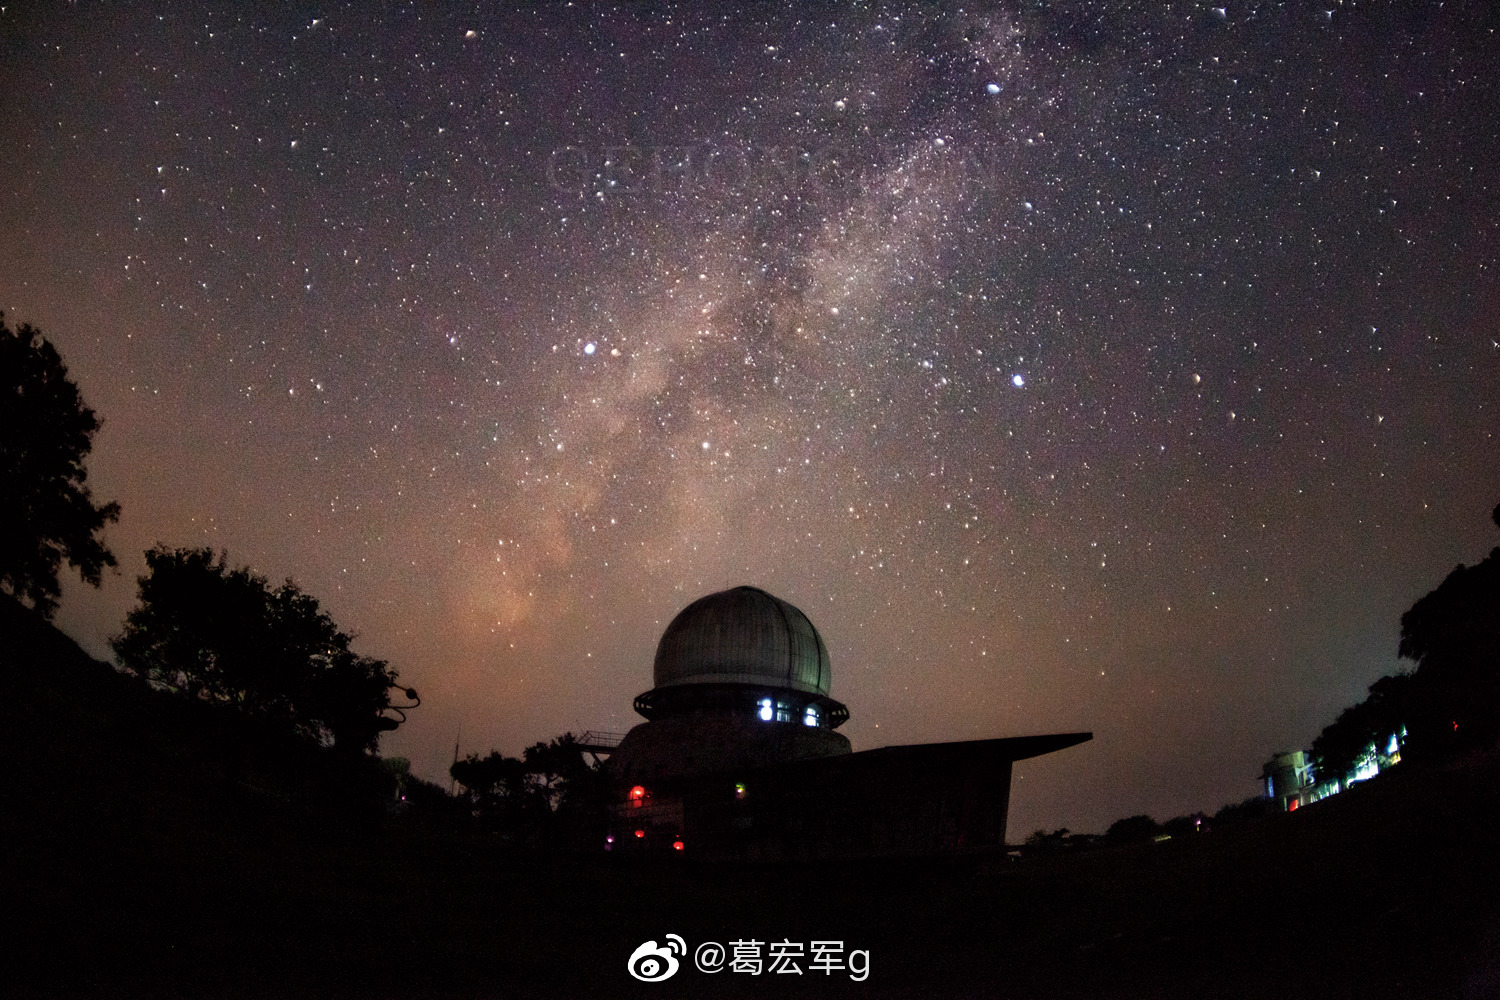 坐落在河北兴隆县的国家天文台兴隆观测站